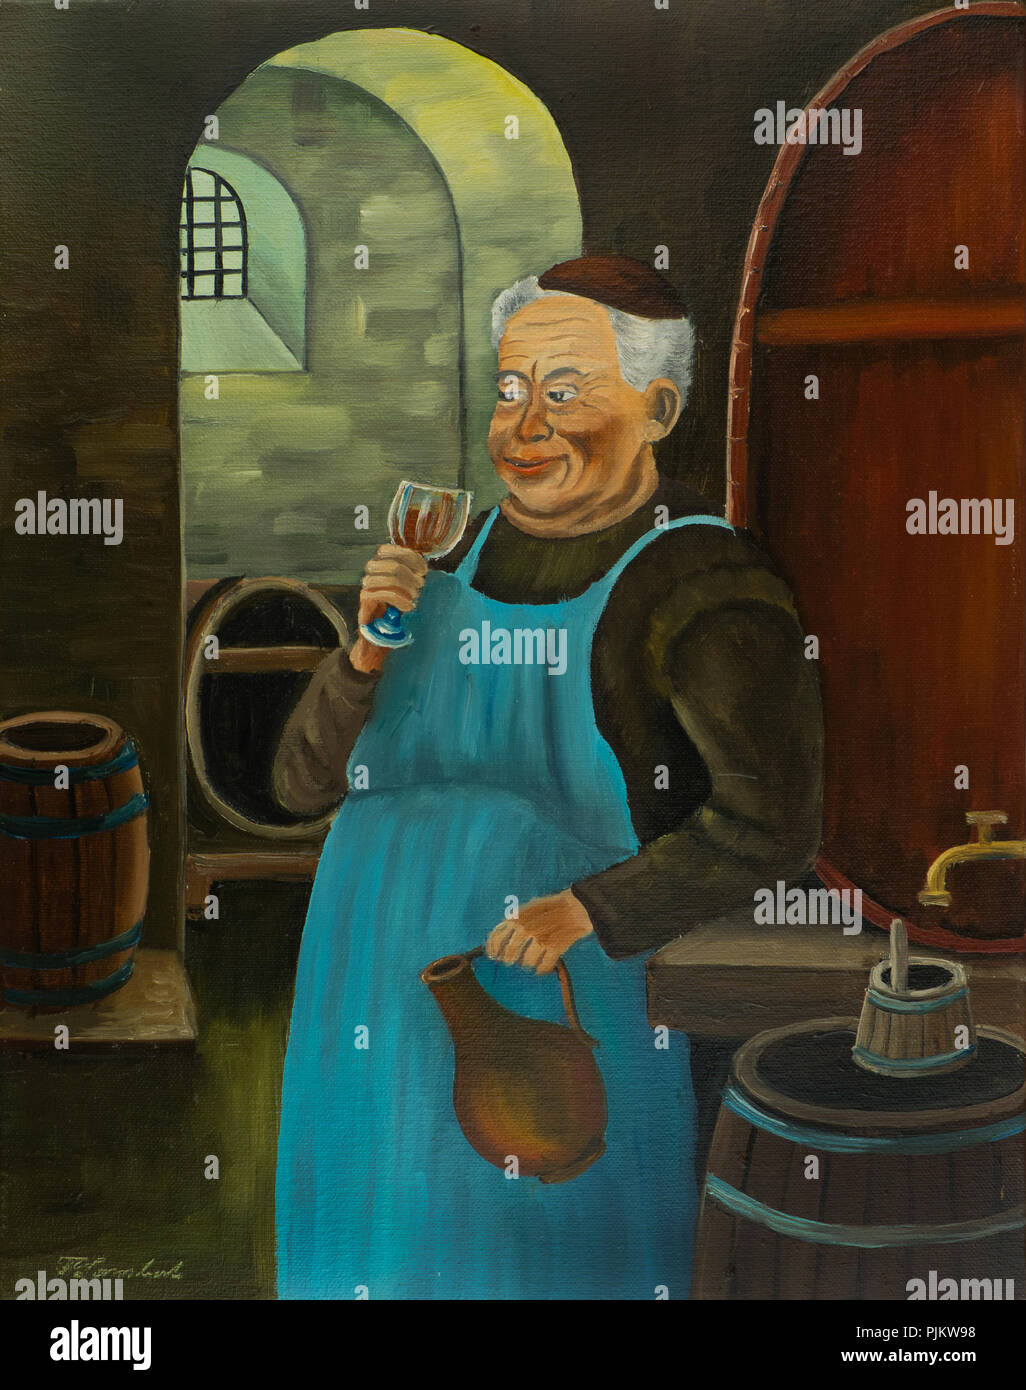 Peinture à l'huile d'un franciscain avec un tablier bleu de boire un verre de vin ou de bière dans la cave Banque D'Images